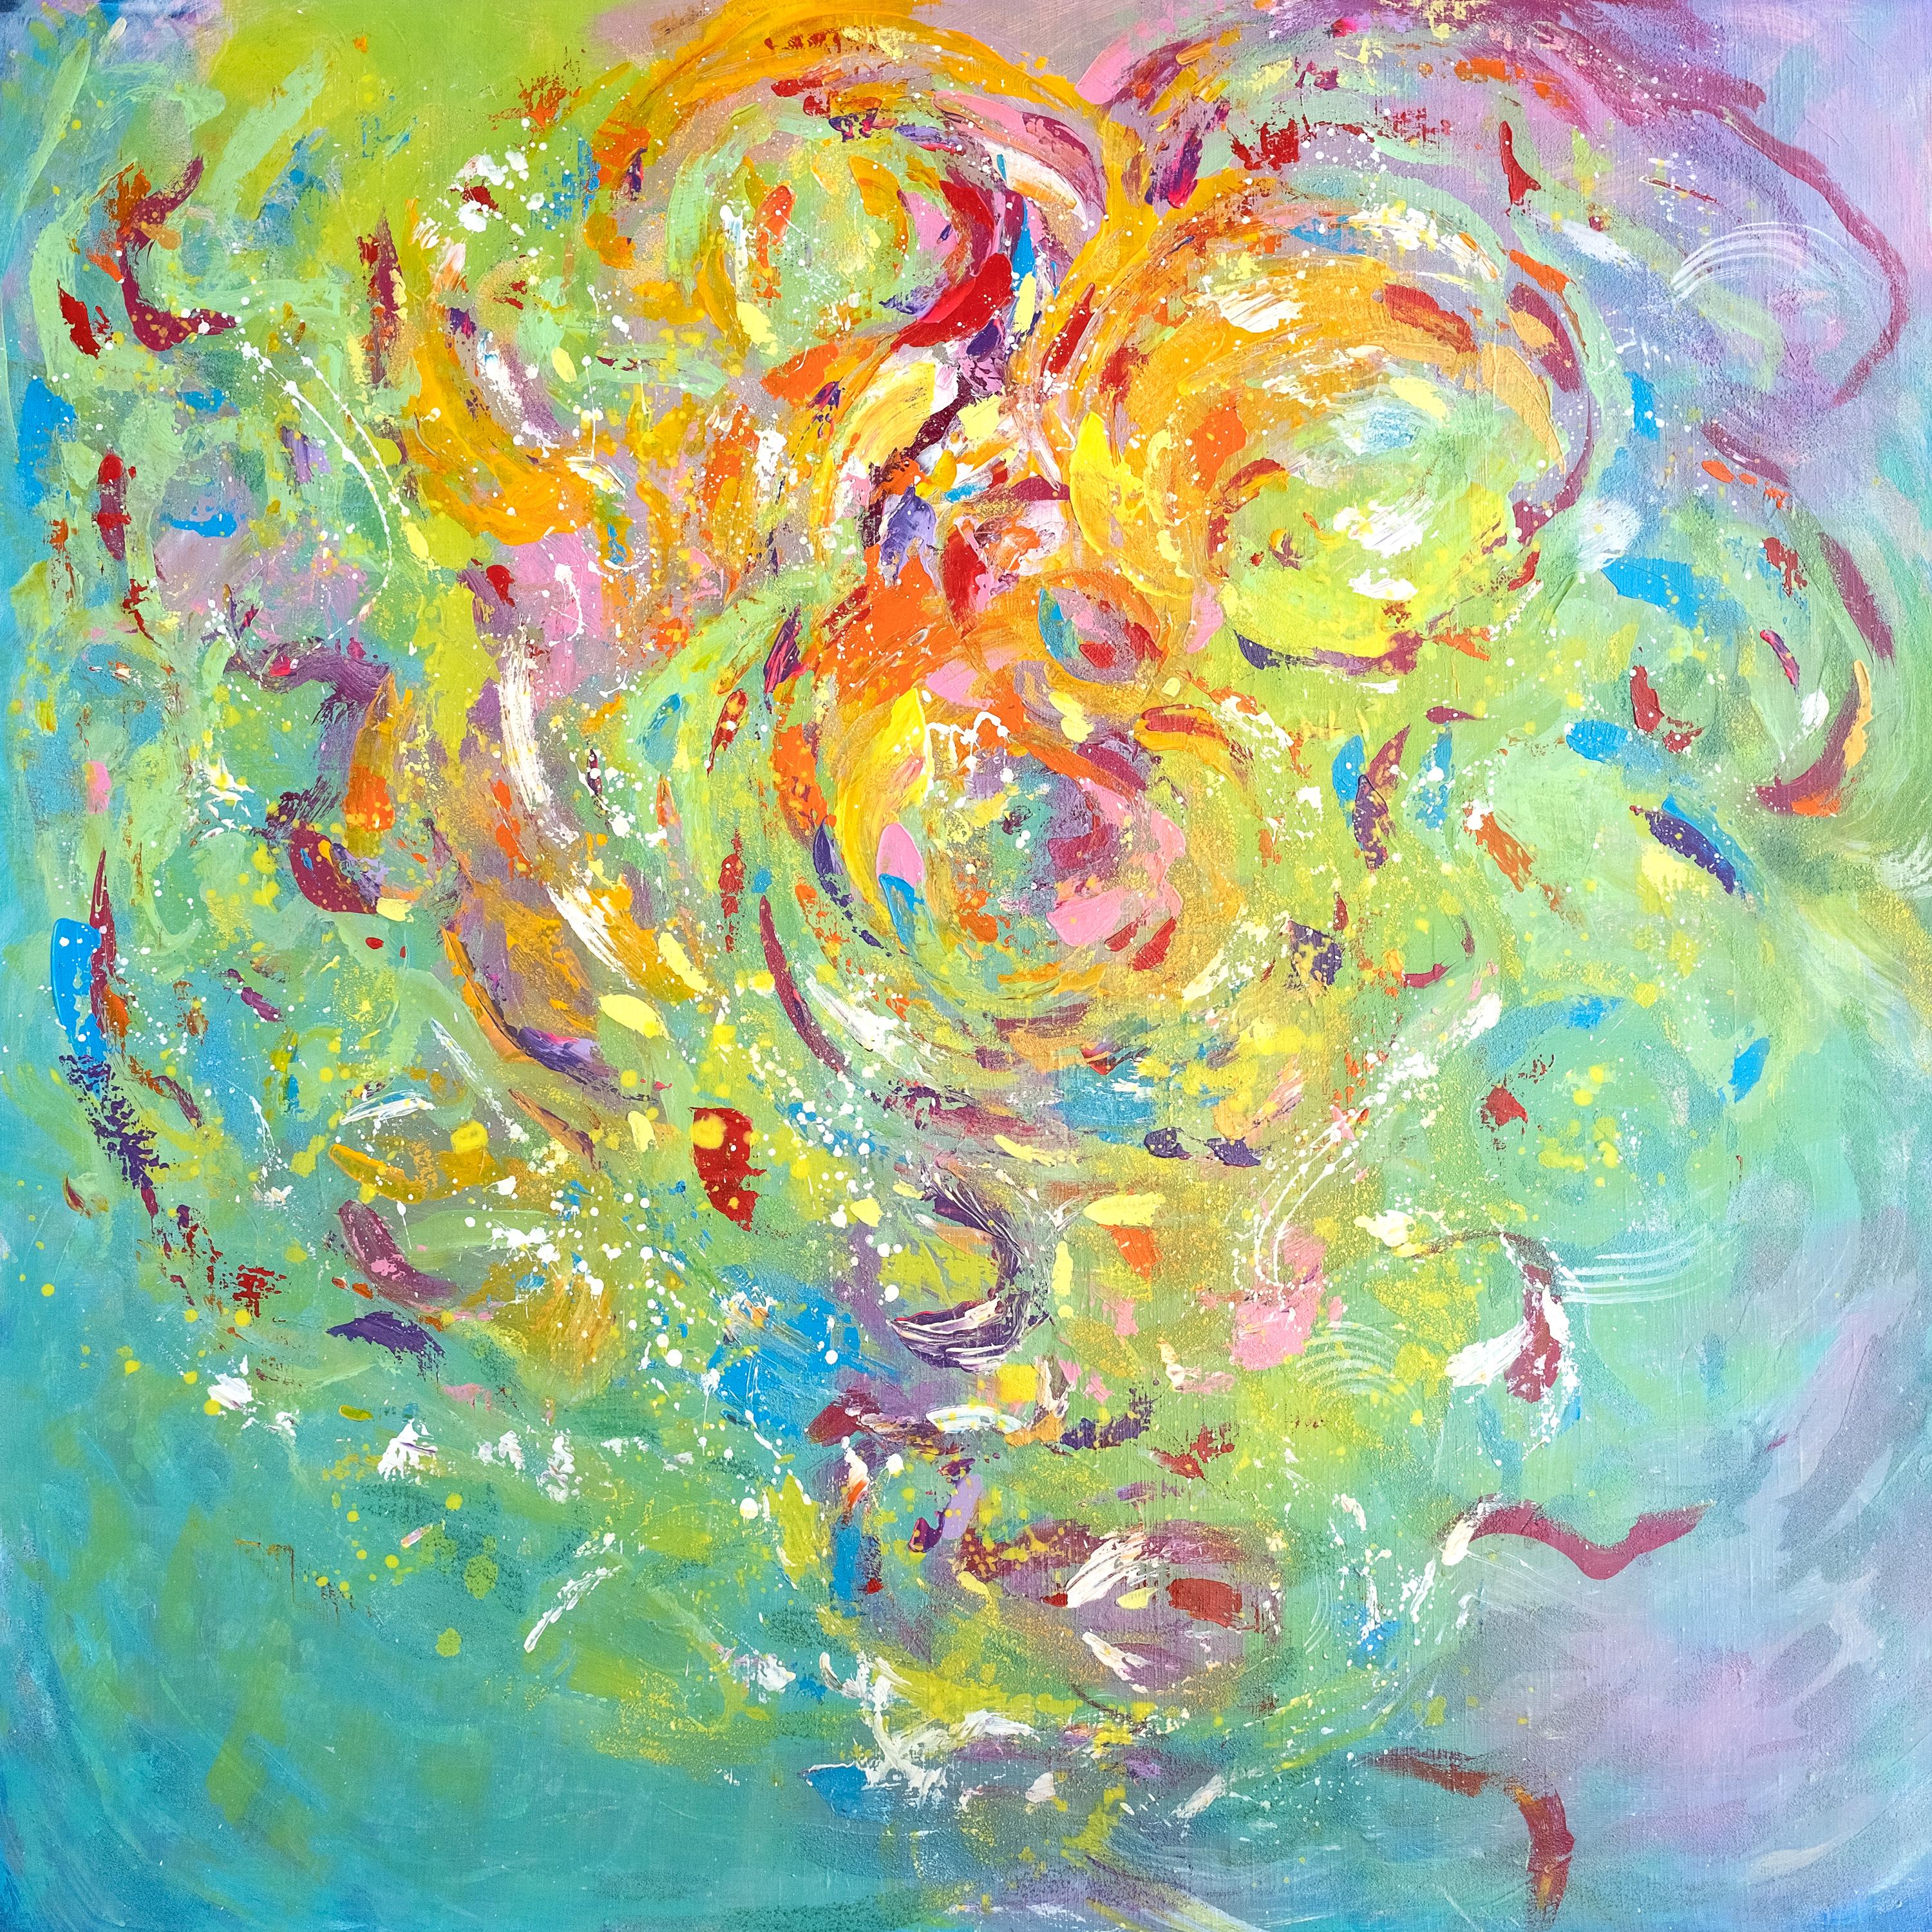 L'espoir, peinture abstraite colorée moderne 100x100cm d'Anna Selina